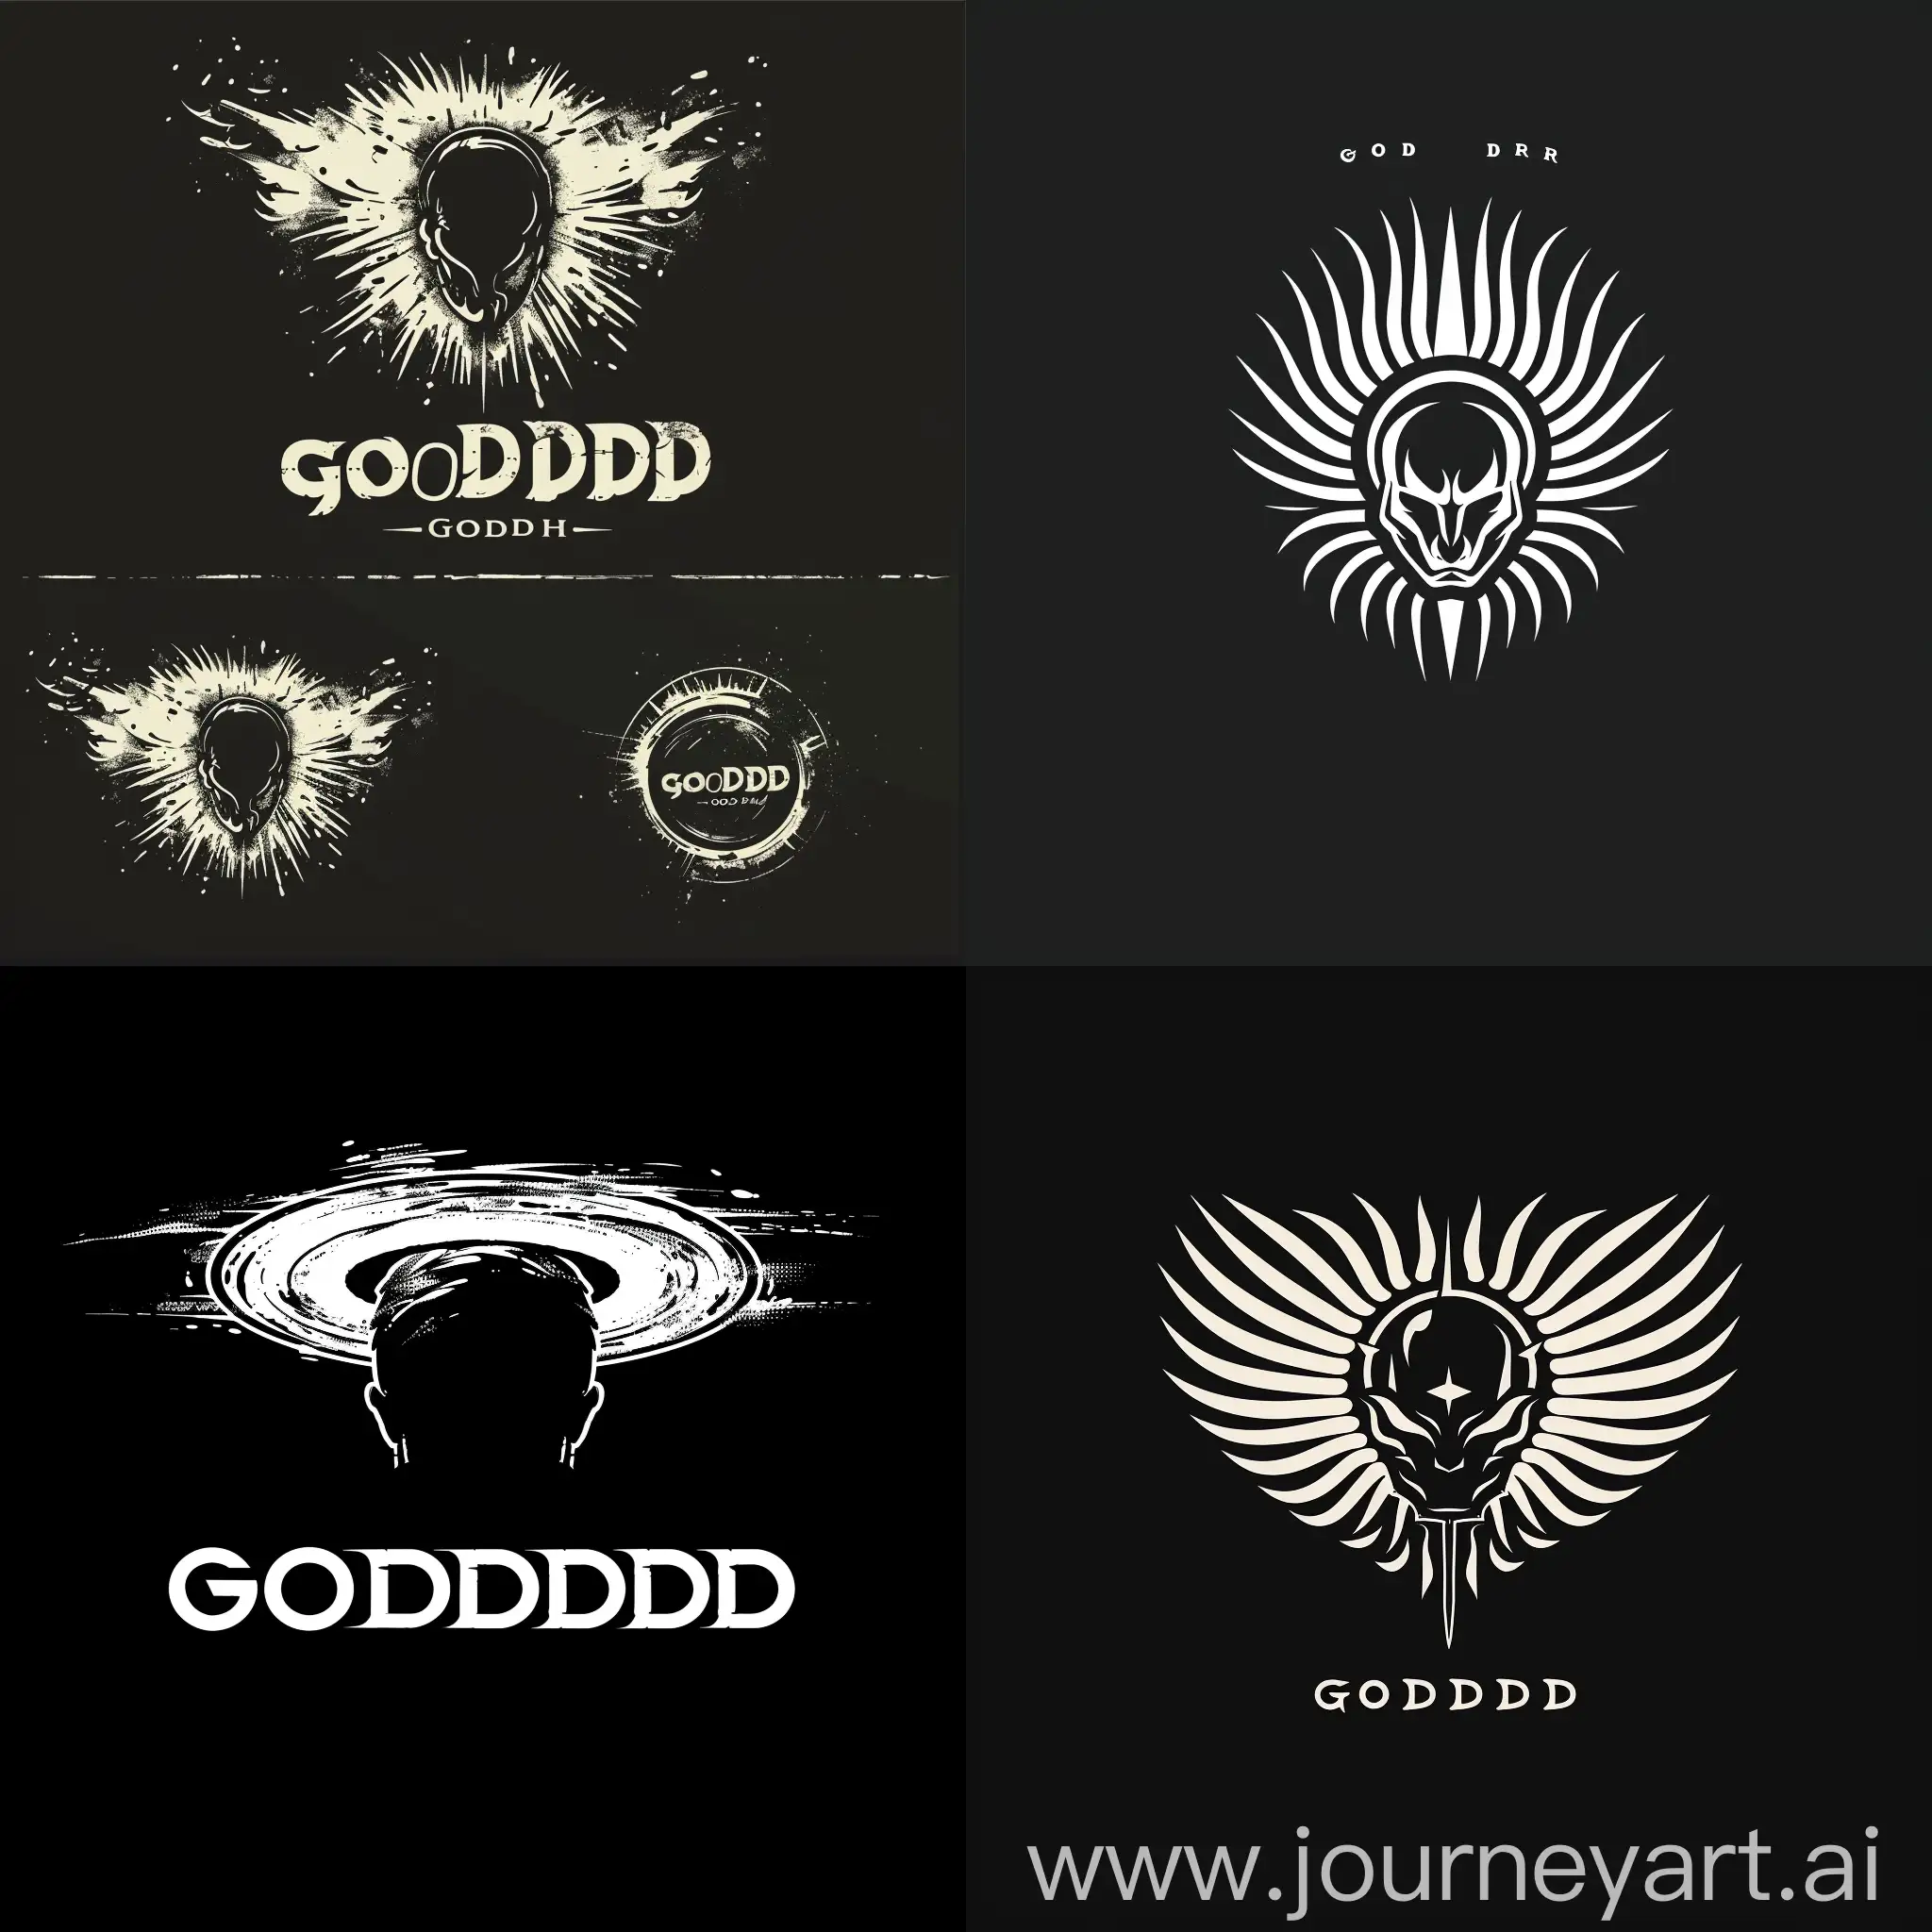 logo for godhead dark clothing company, the main idea is a halo